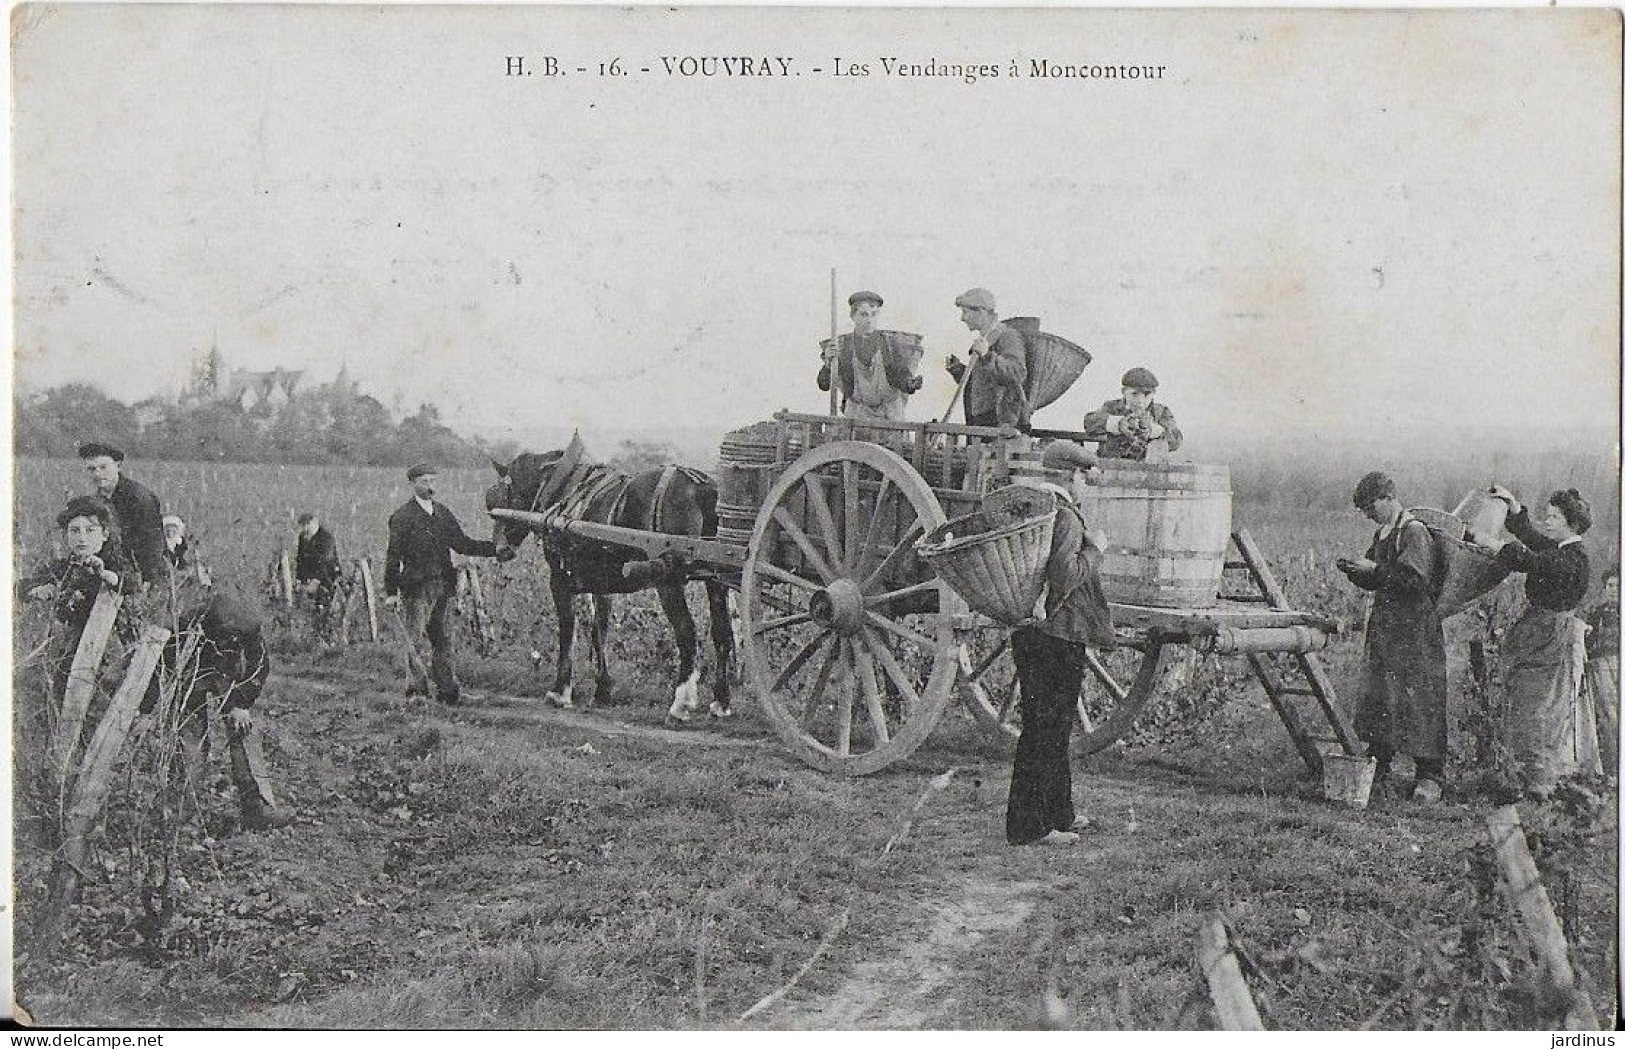 Les Vendanges à Moncontour - Vouvray